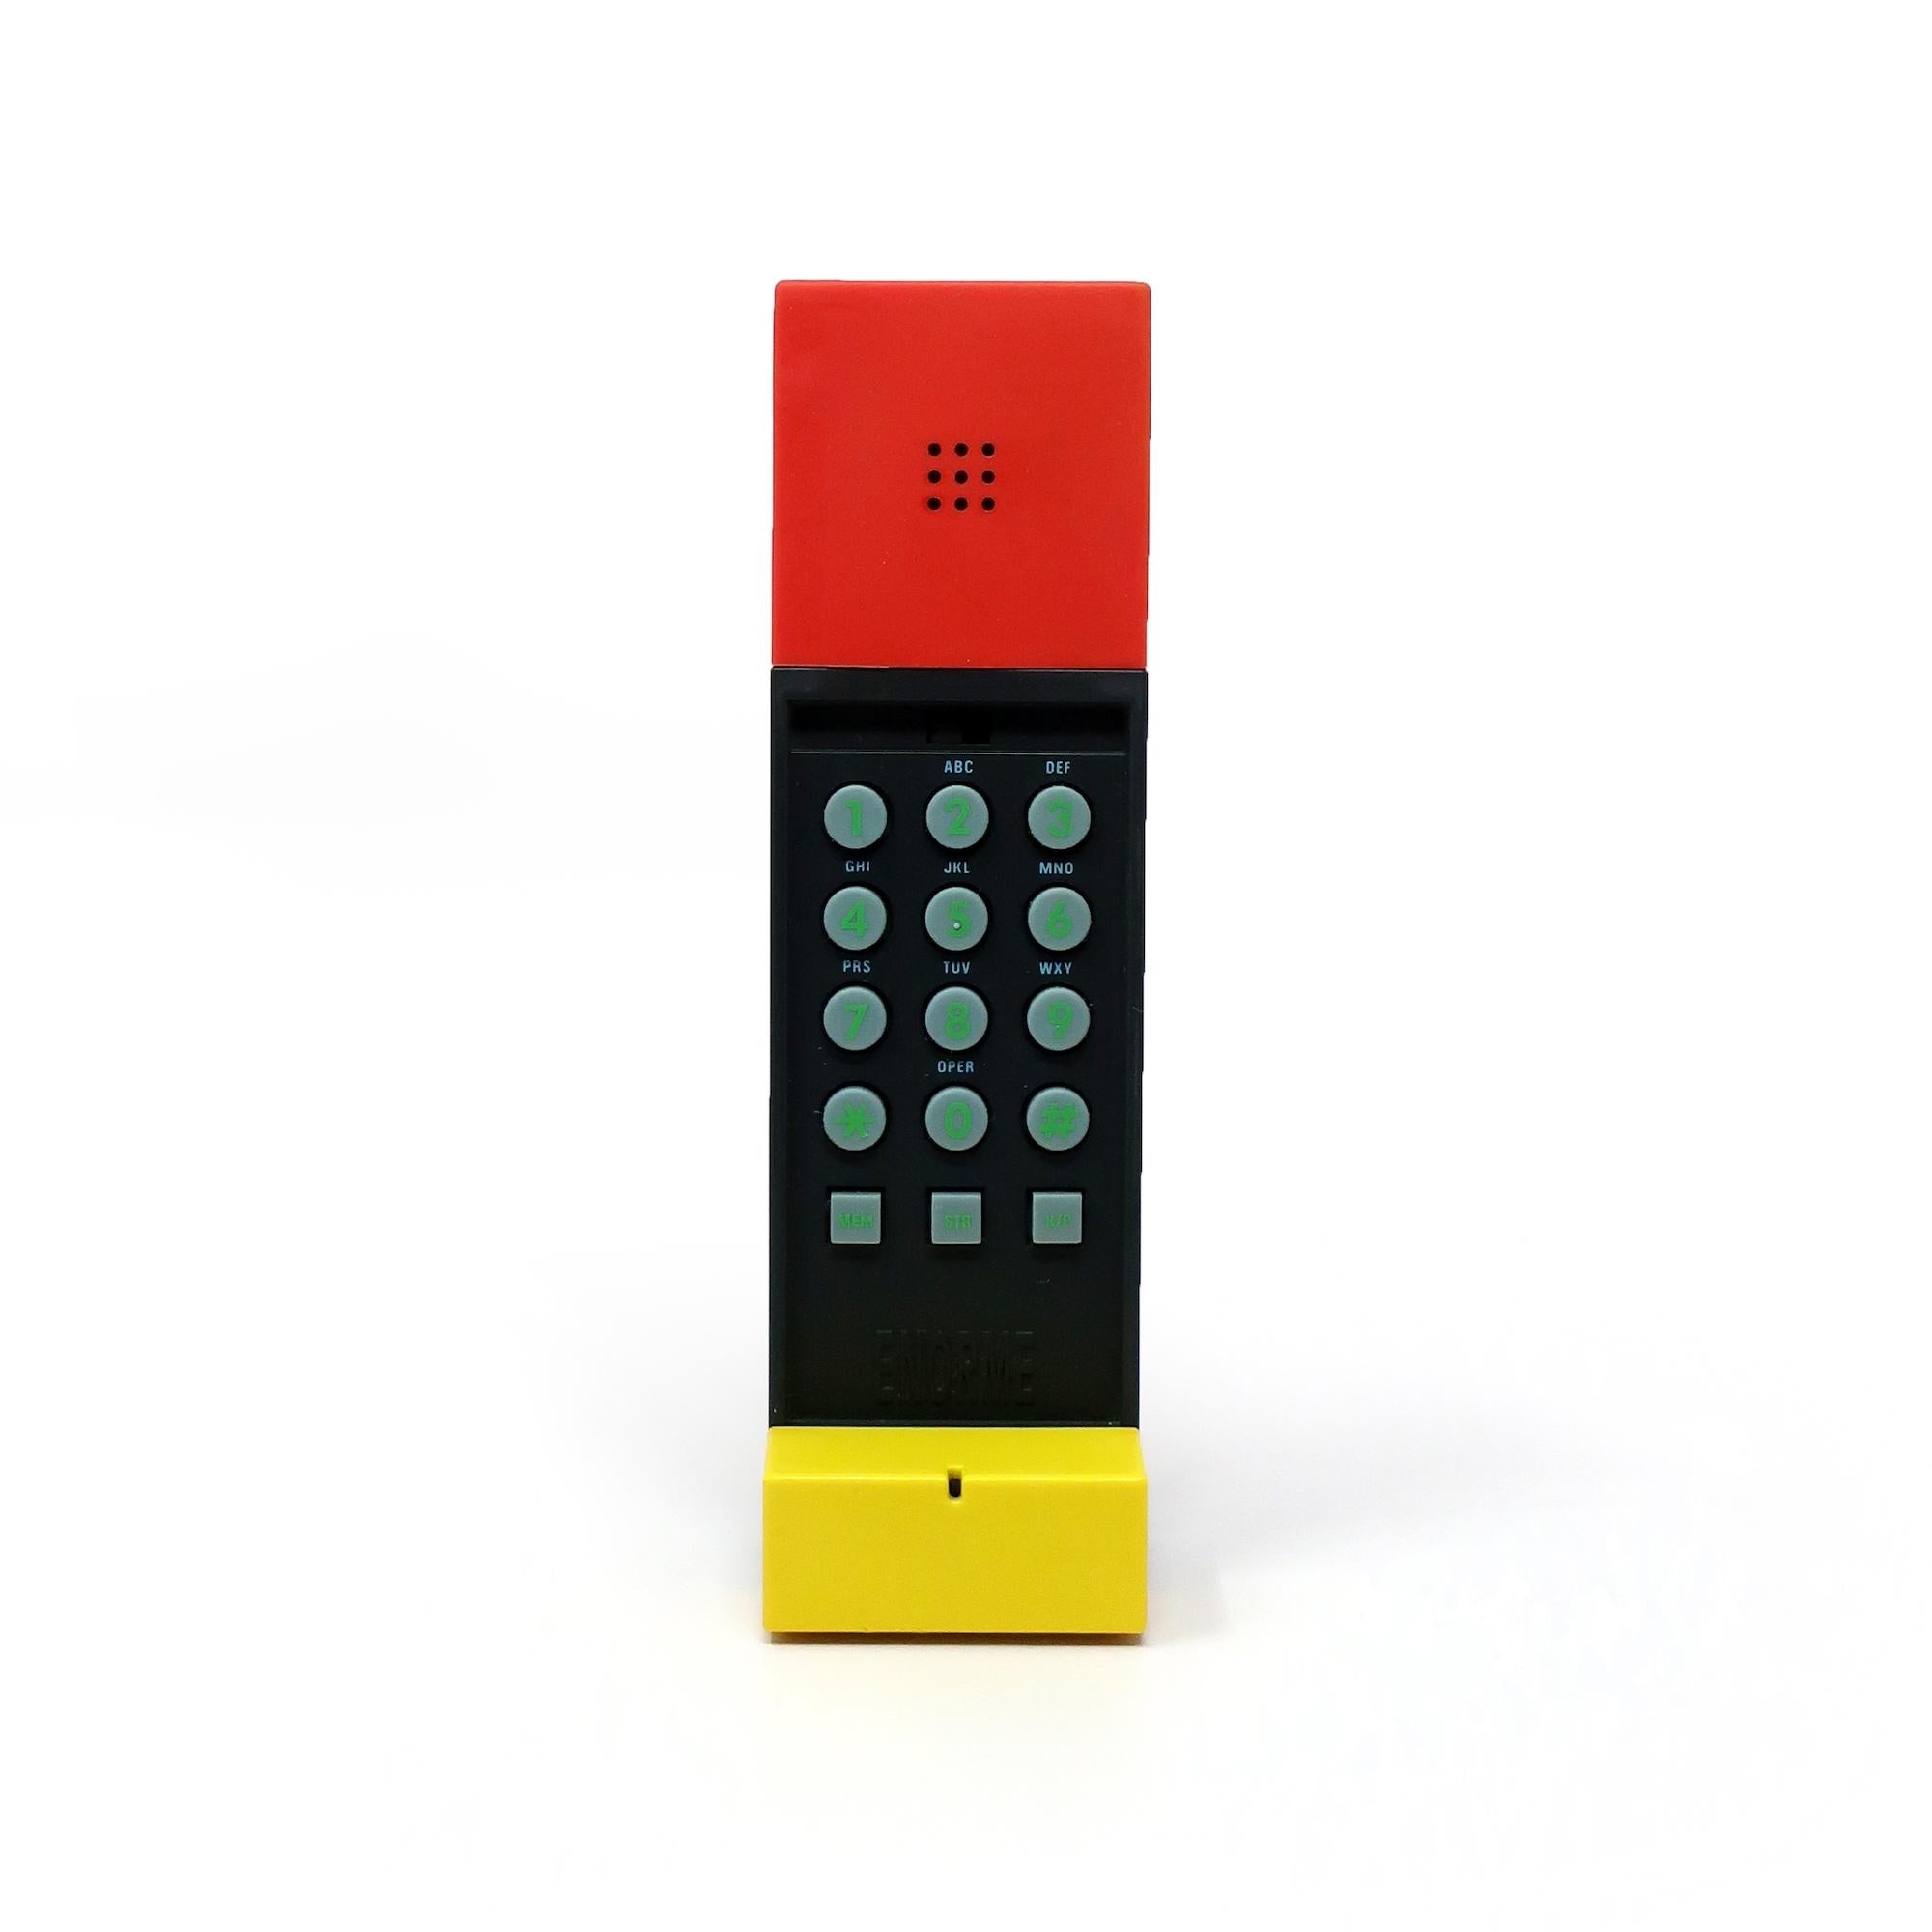 Un combiné téléphonique parfaitement postmoderne conçu par le maître de Memphis Milano, Ettore Sottsass, et produit en 1986.  Le téléphone Enorme est le fruit d'une collaboration entre Sottsass et David Kelley, fondateur du cabinet de design IDEO.